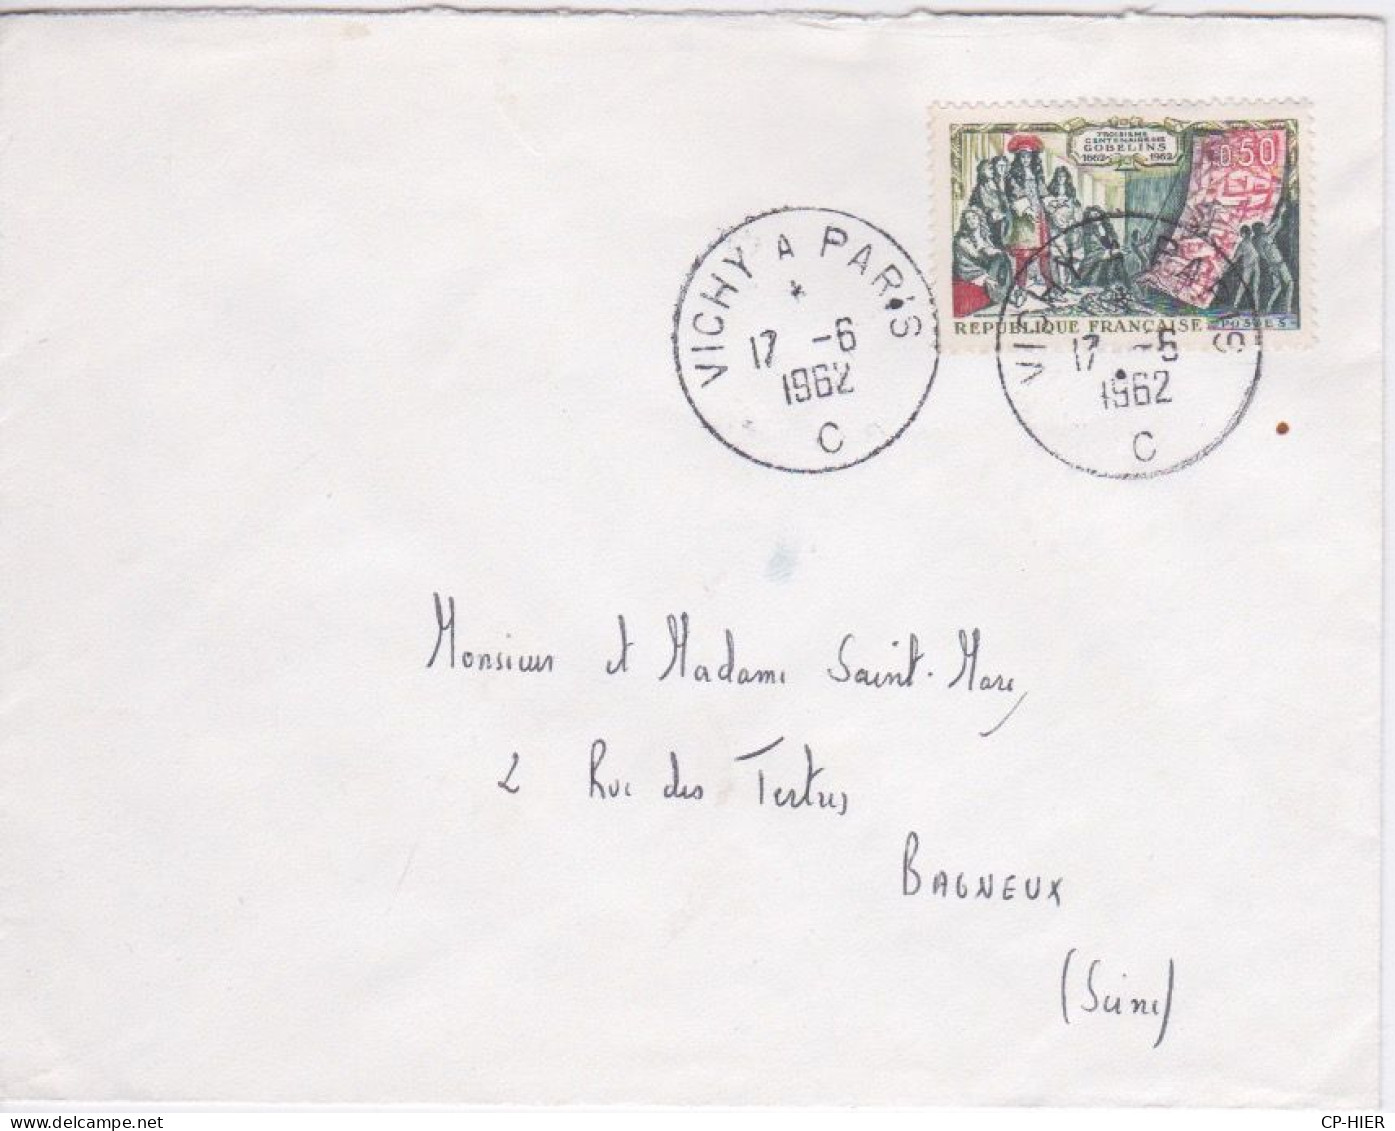 FRANCE - FLAMME VICHY A PARIS 17 06 1962 - LETTRE C - TYPE DAGUIN - Mechanical Postmarks (Advertisement)